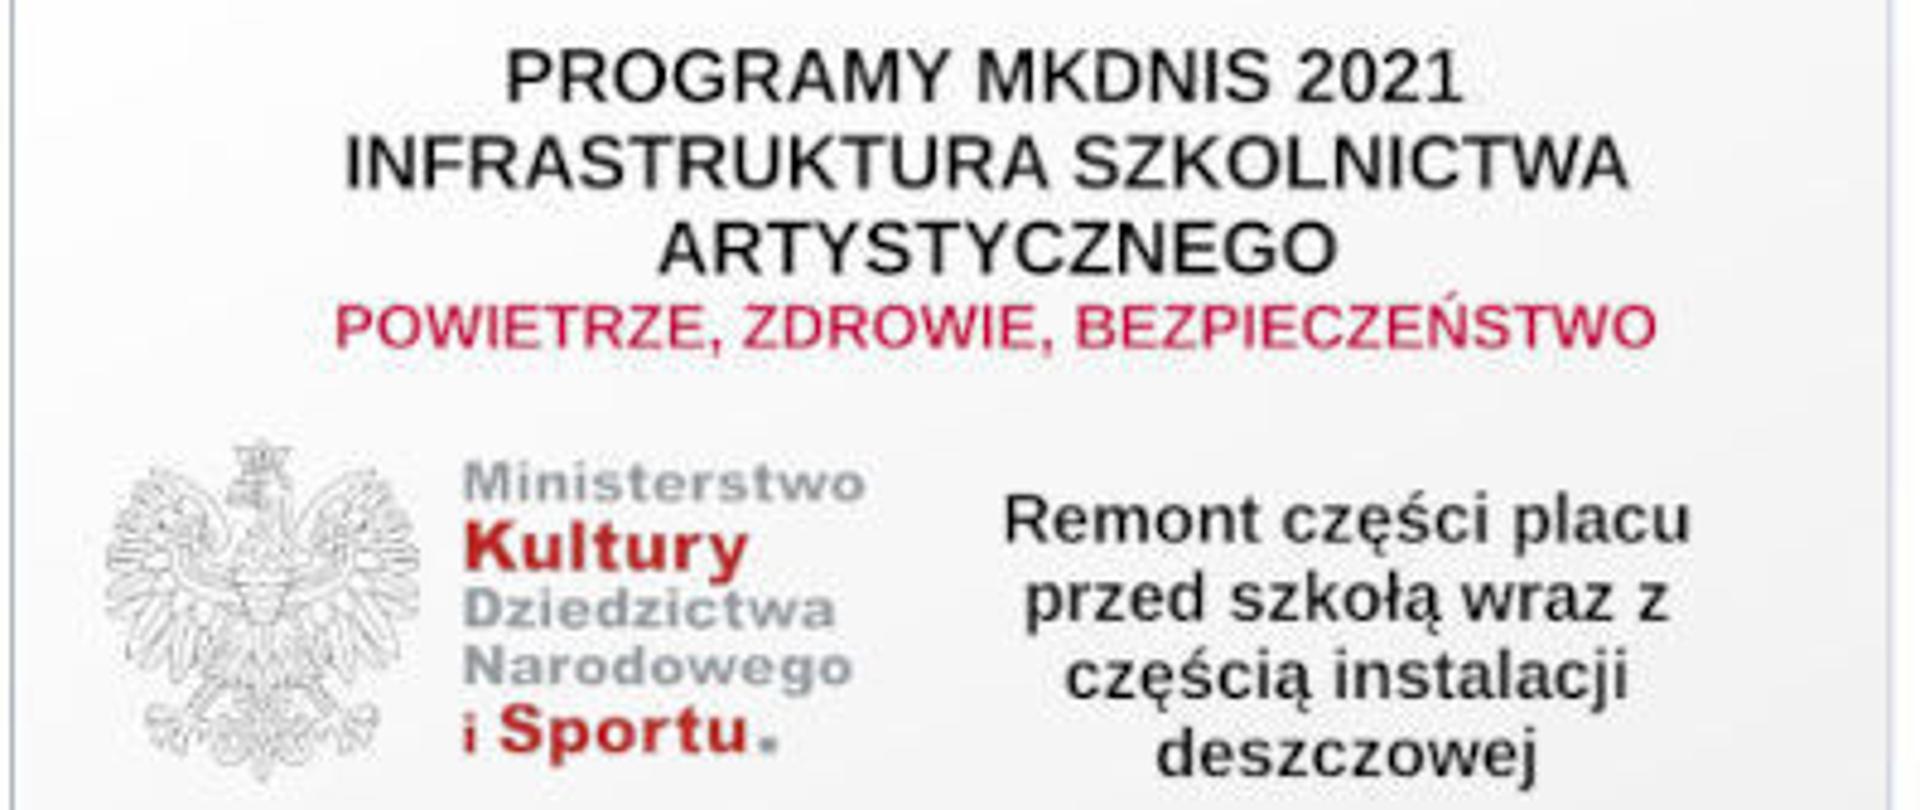 Baner z programem MKDNIS - Infrastruktura Szkolnictwa Artystycznego - Powietrze, Zdrowie, Bezpieczeństwo. Na banerze godło Polski.